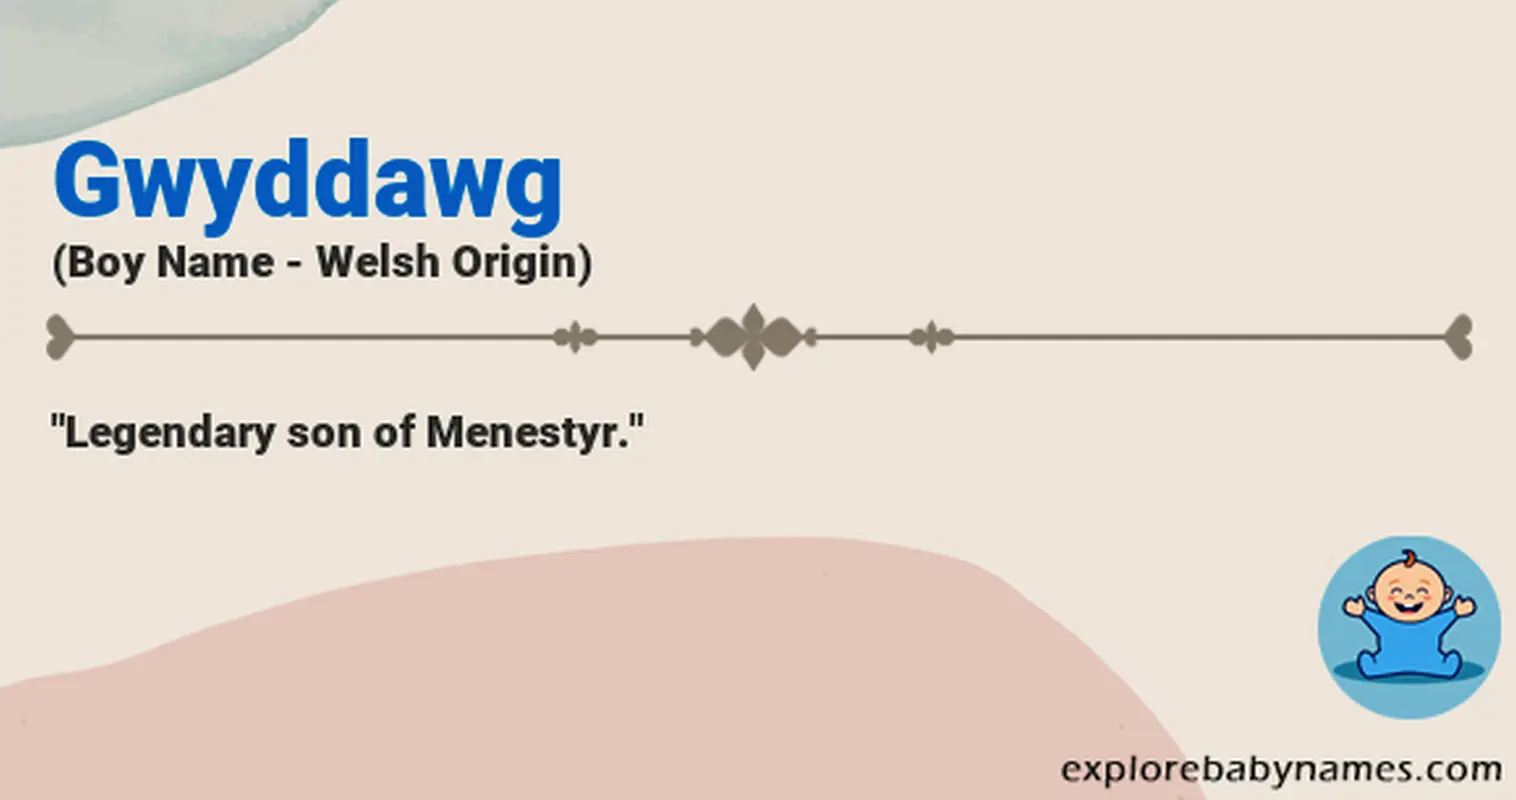 Meaning of Gwyddawg